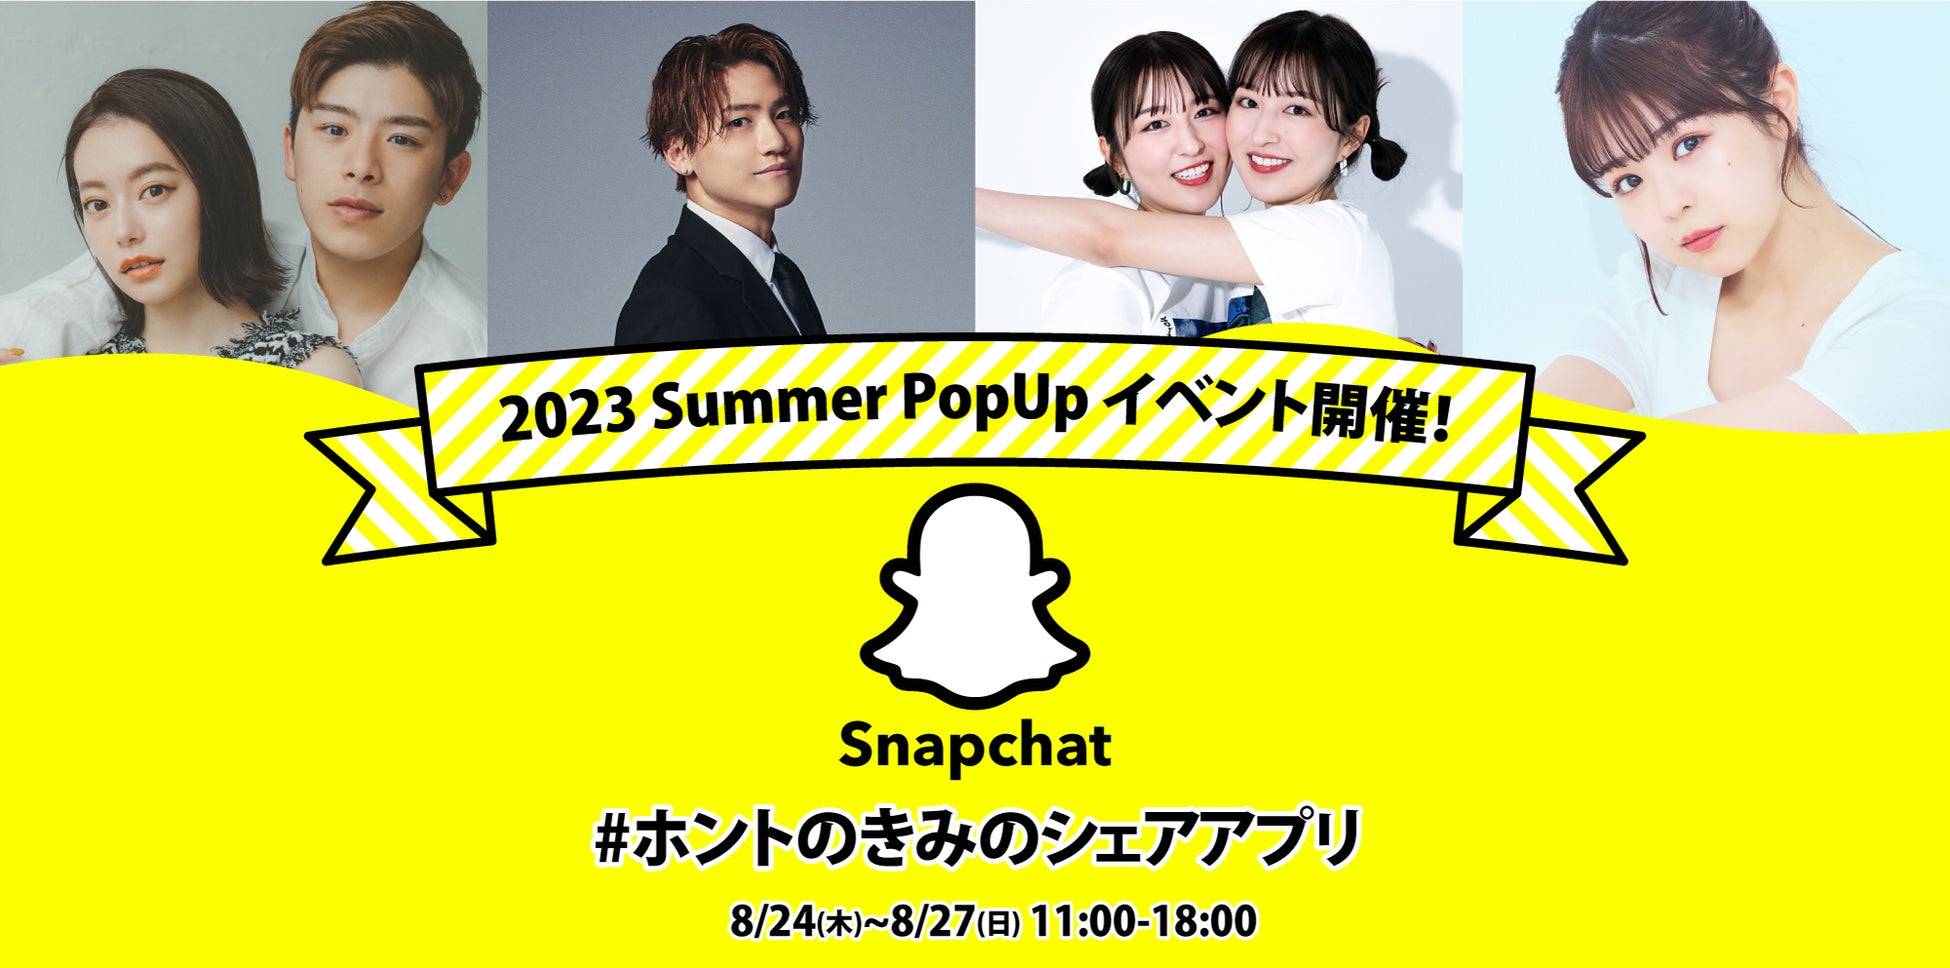 撮って 送って 笑ってつながる #ホントのきみのシェアアプリSnapchat「2023 Summer PopUpイベント」が8月24日から8月27日まで渋谷「シブテナ」にて期間限定オープンのサブ画像1